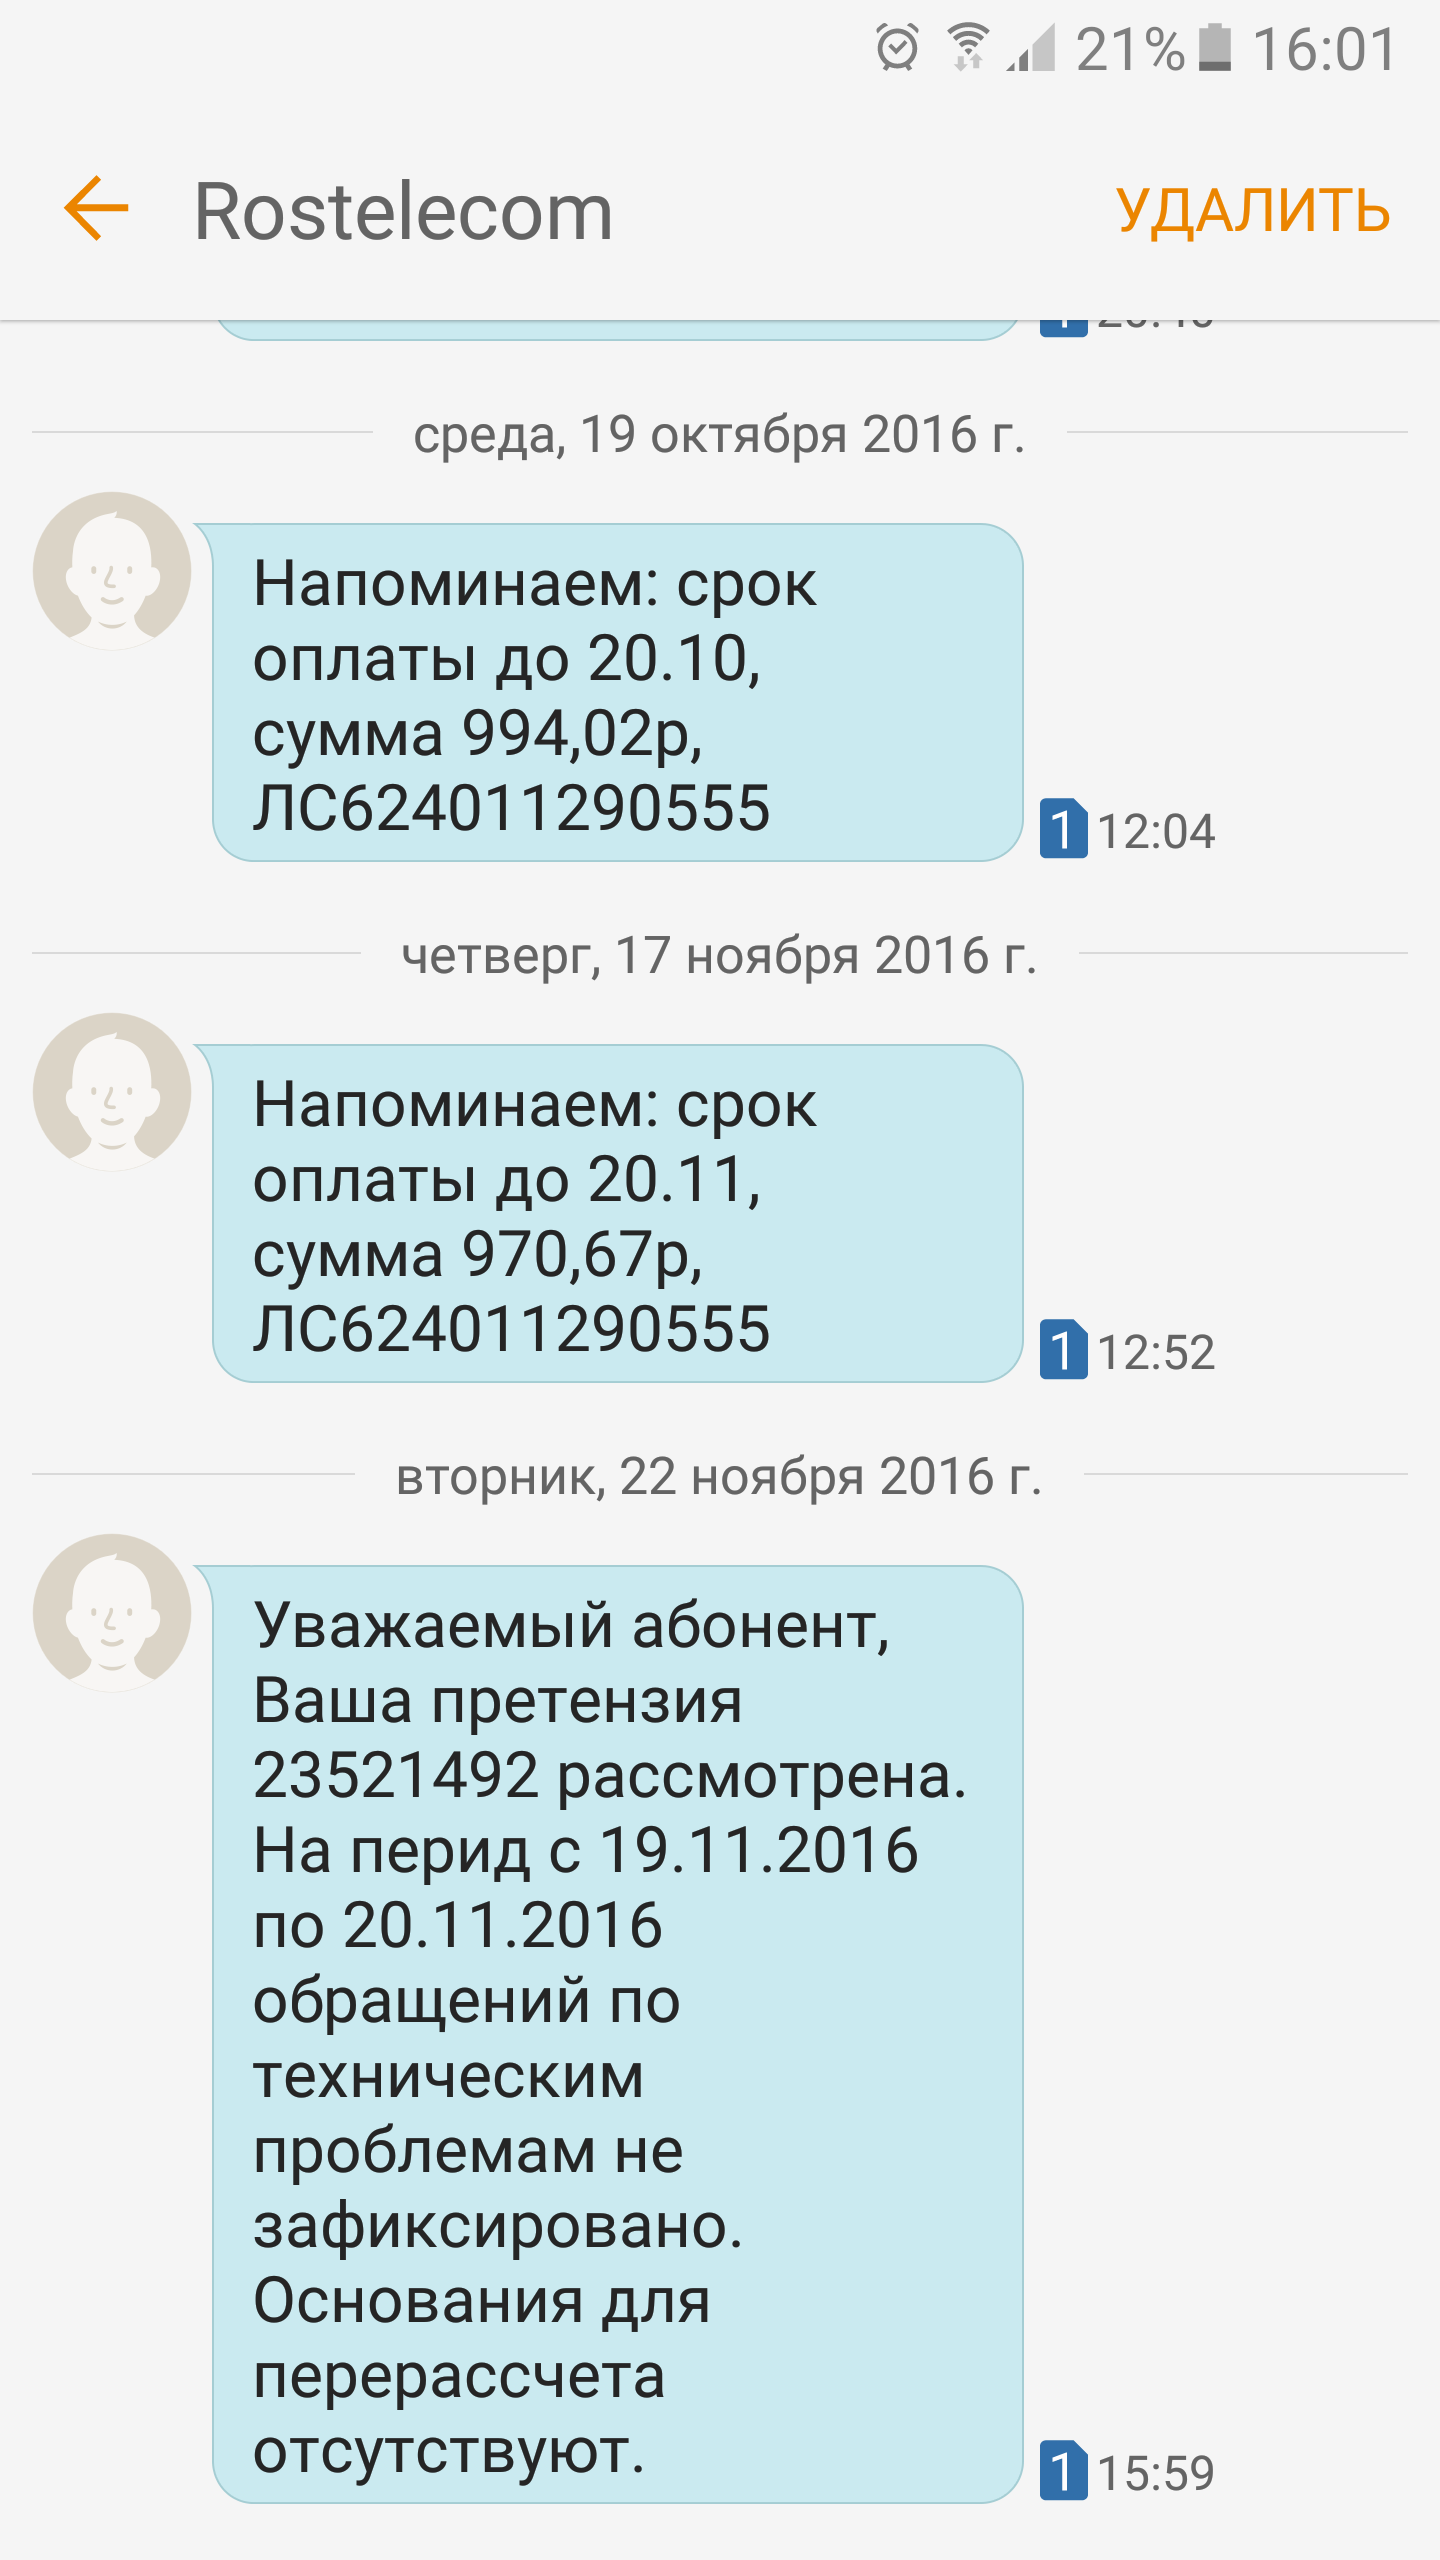 Саяногорск Инфо - screenshot_20161122-160125.png, Скачано: 390